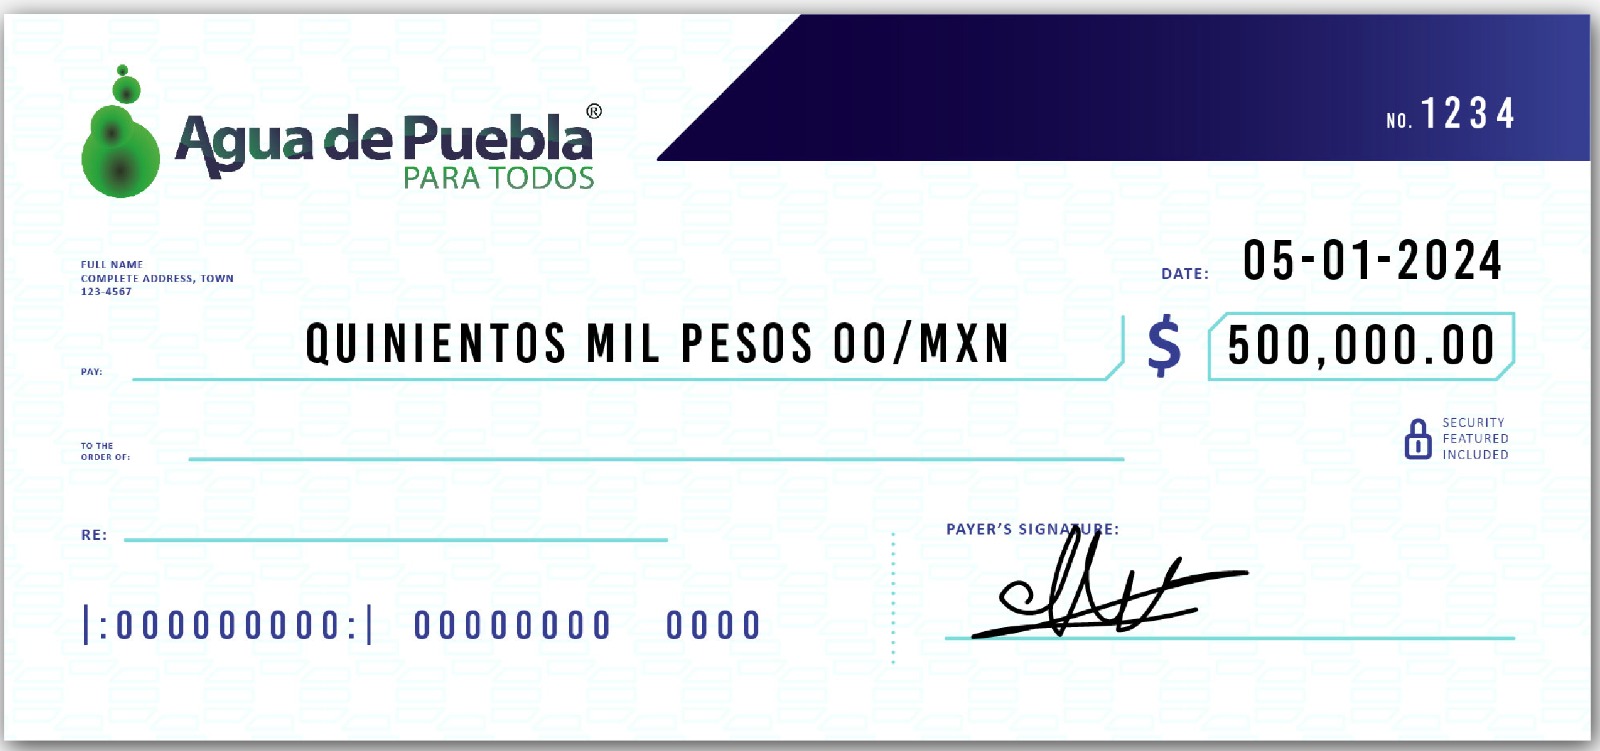 Agua de Puebla on X: Adquiere tu #medidor y paga lo justo por el